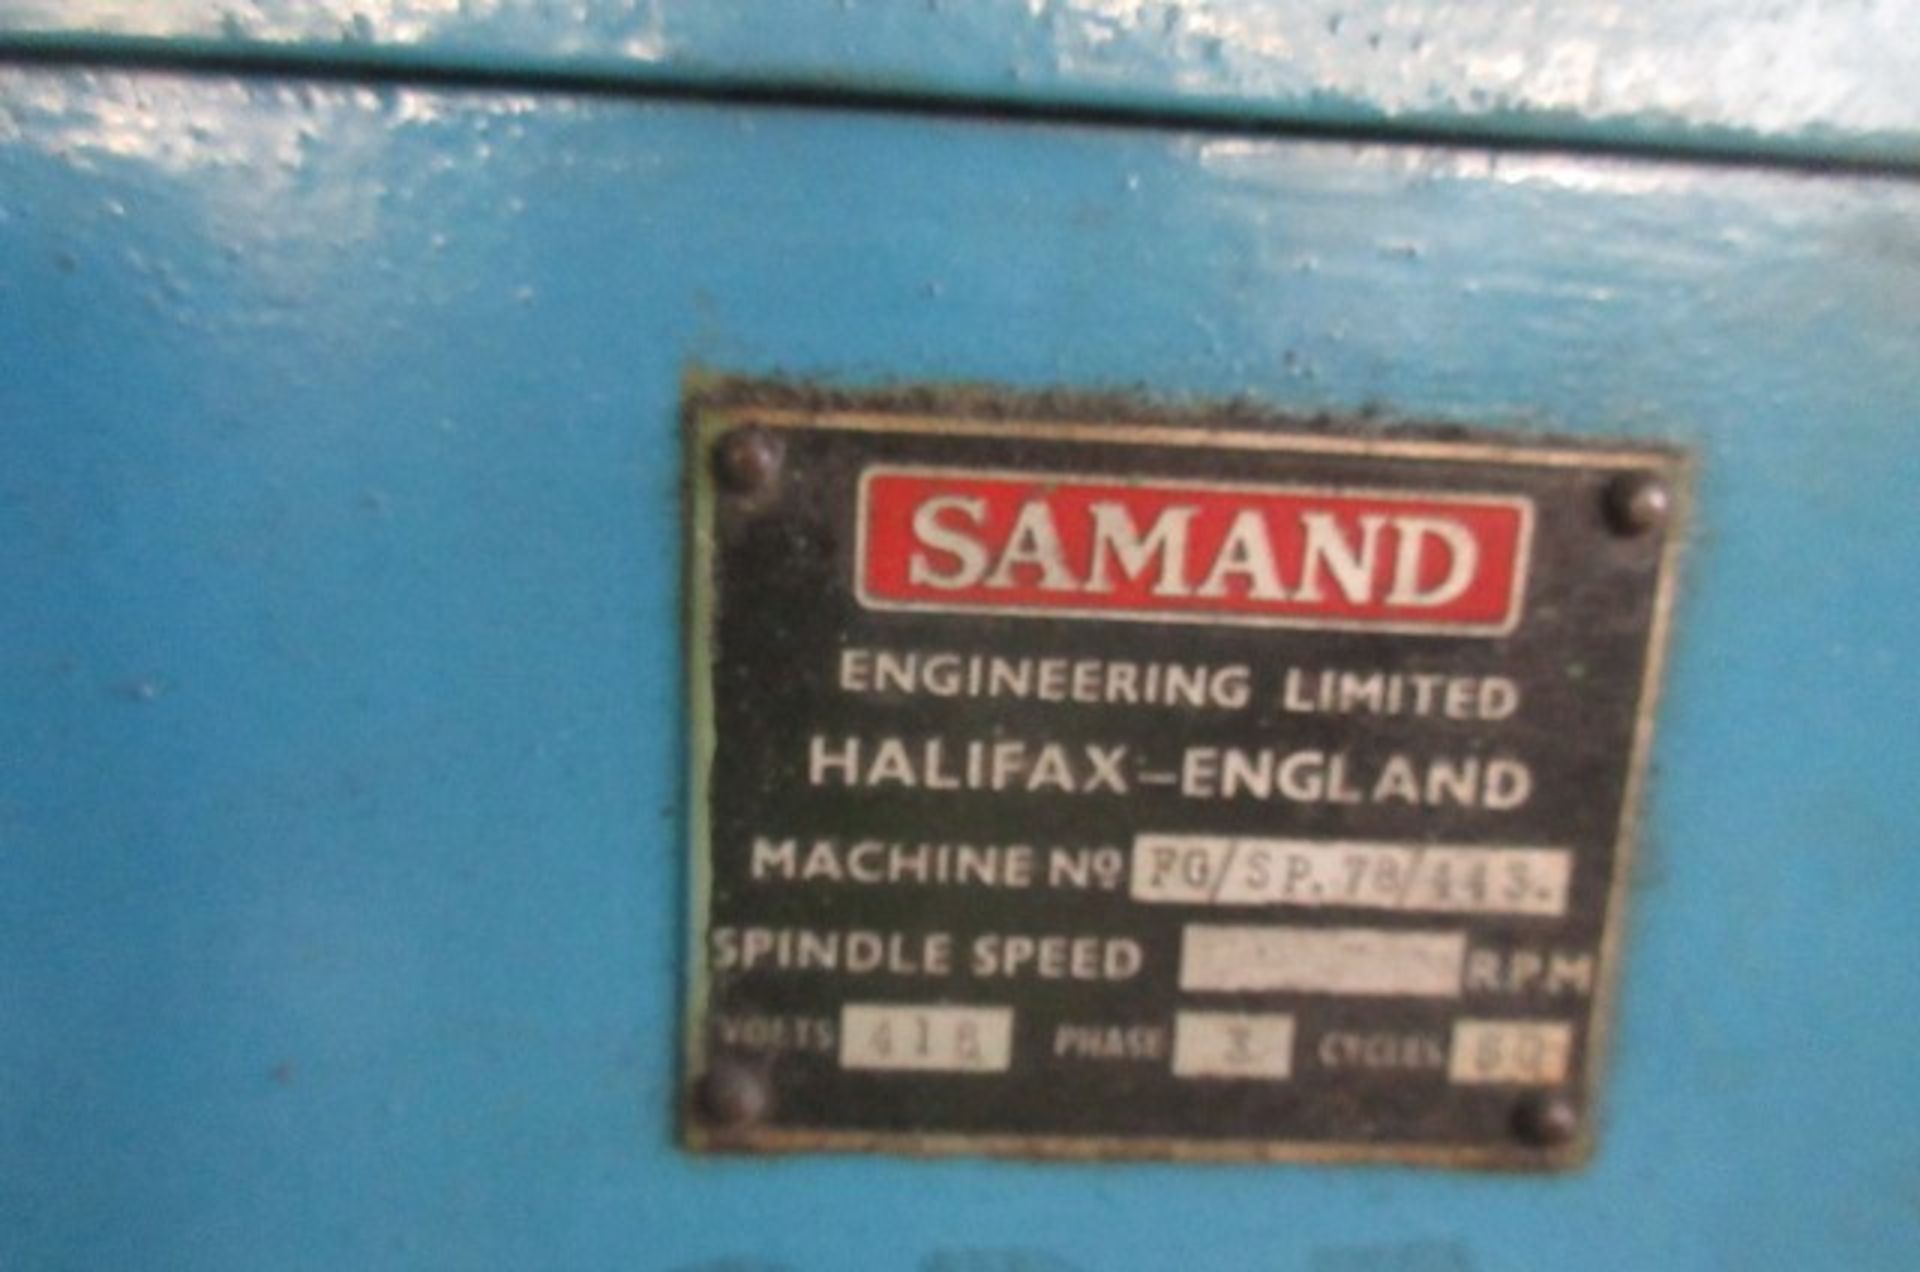 Samand 3 station tool grinder - Image 3 of 3